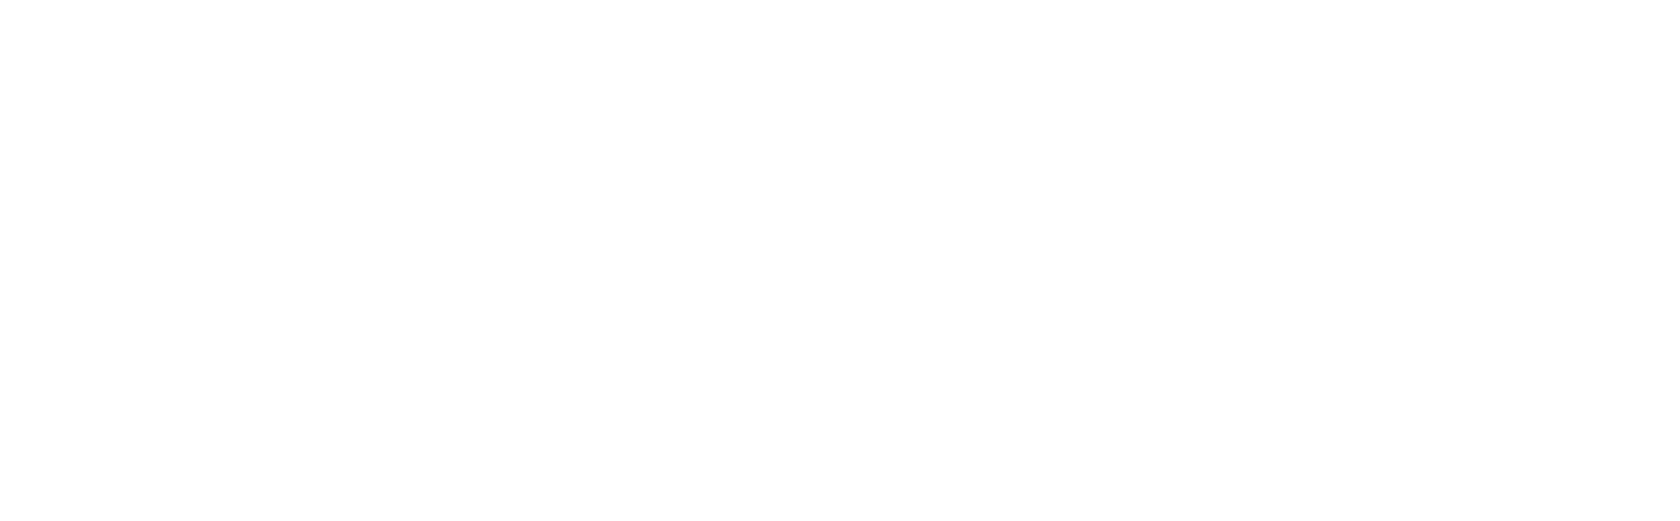 Logo Nalcar